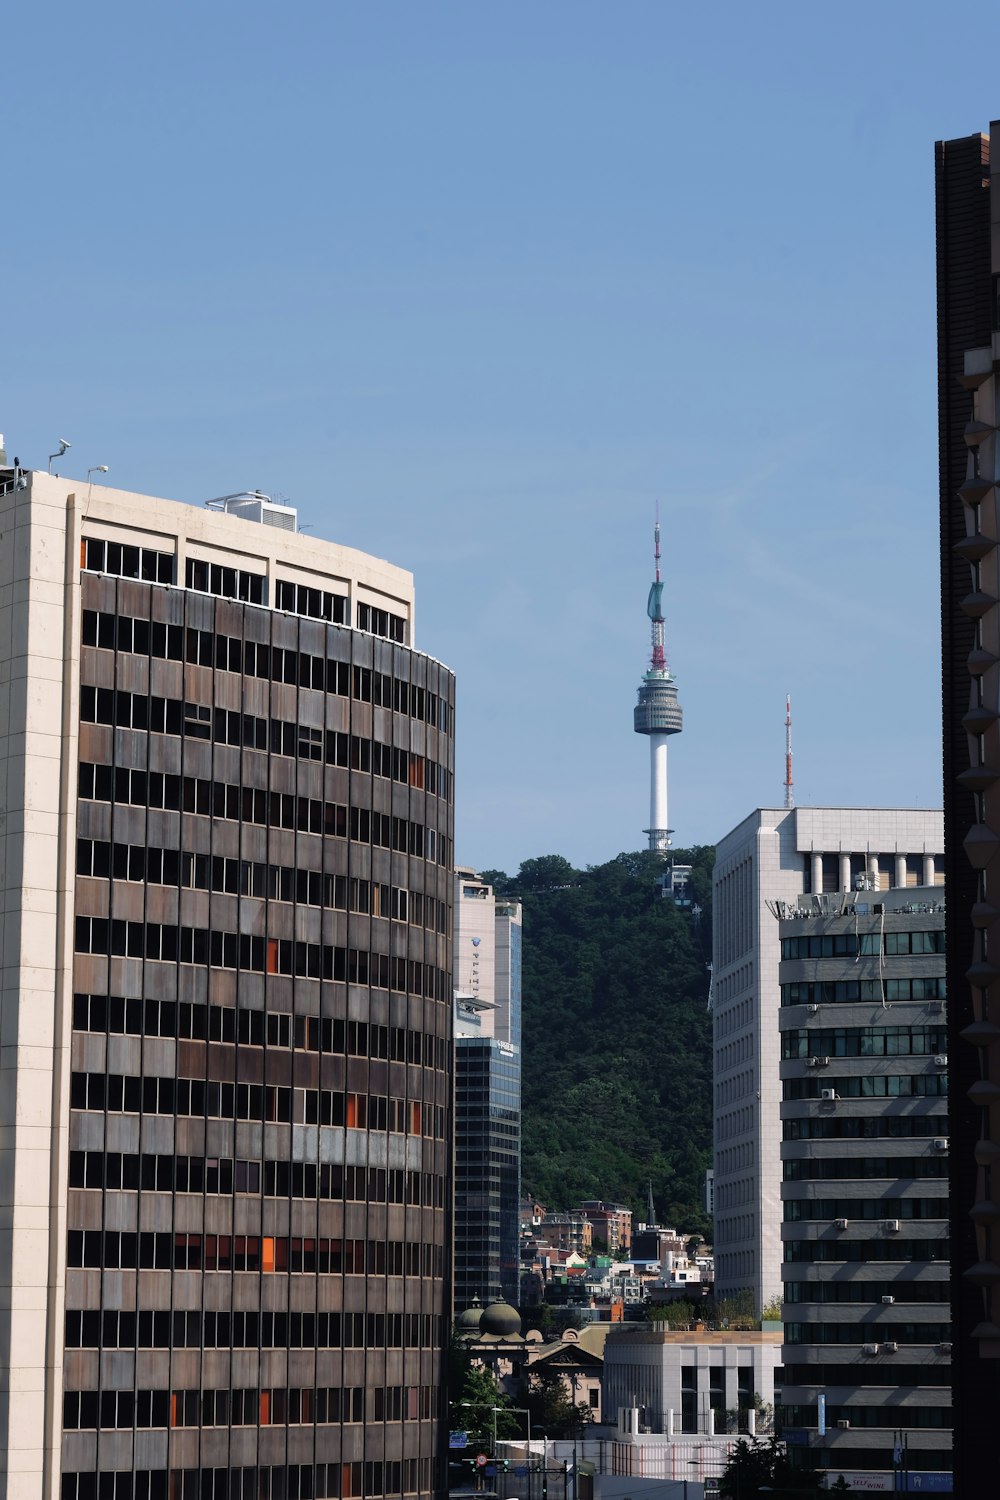 Una vista de una ciudad con edificios altos y una torre de televisión en el fondo